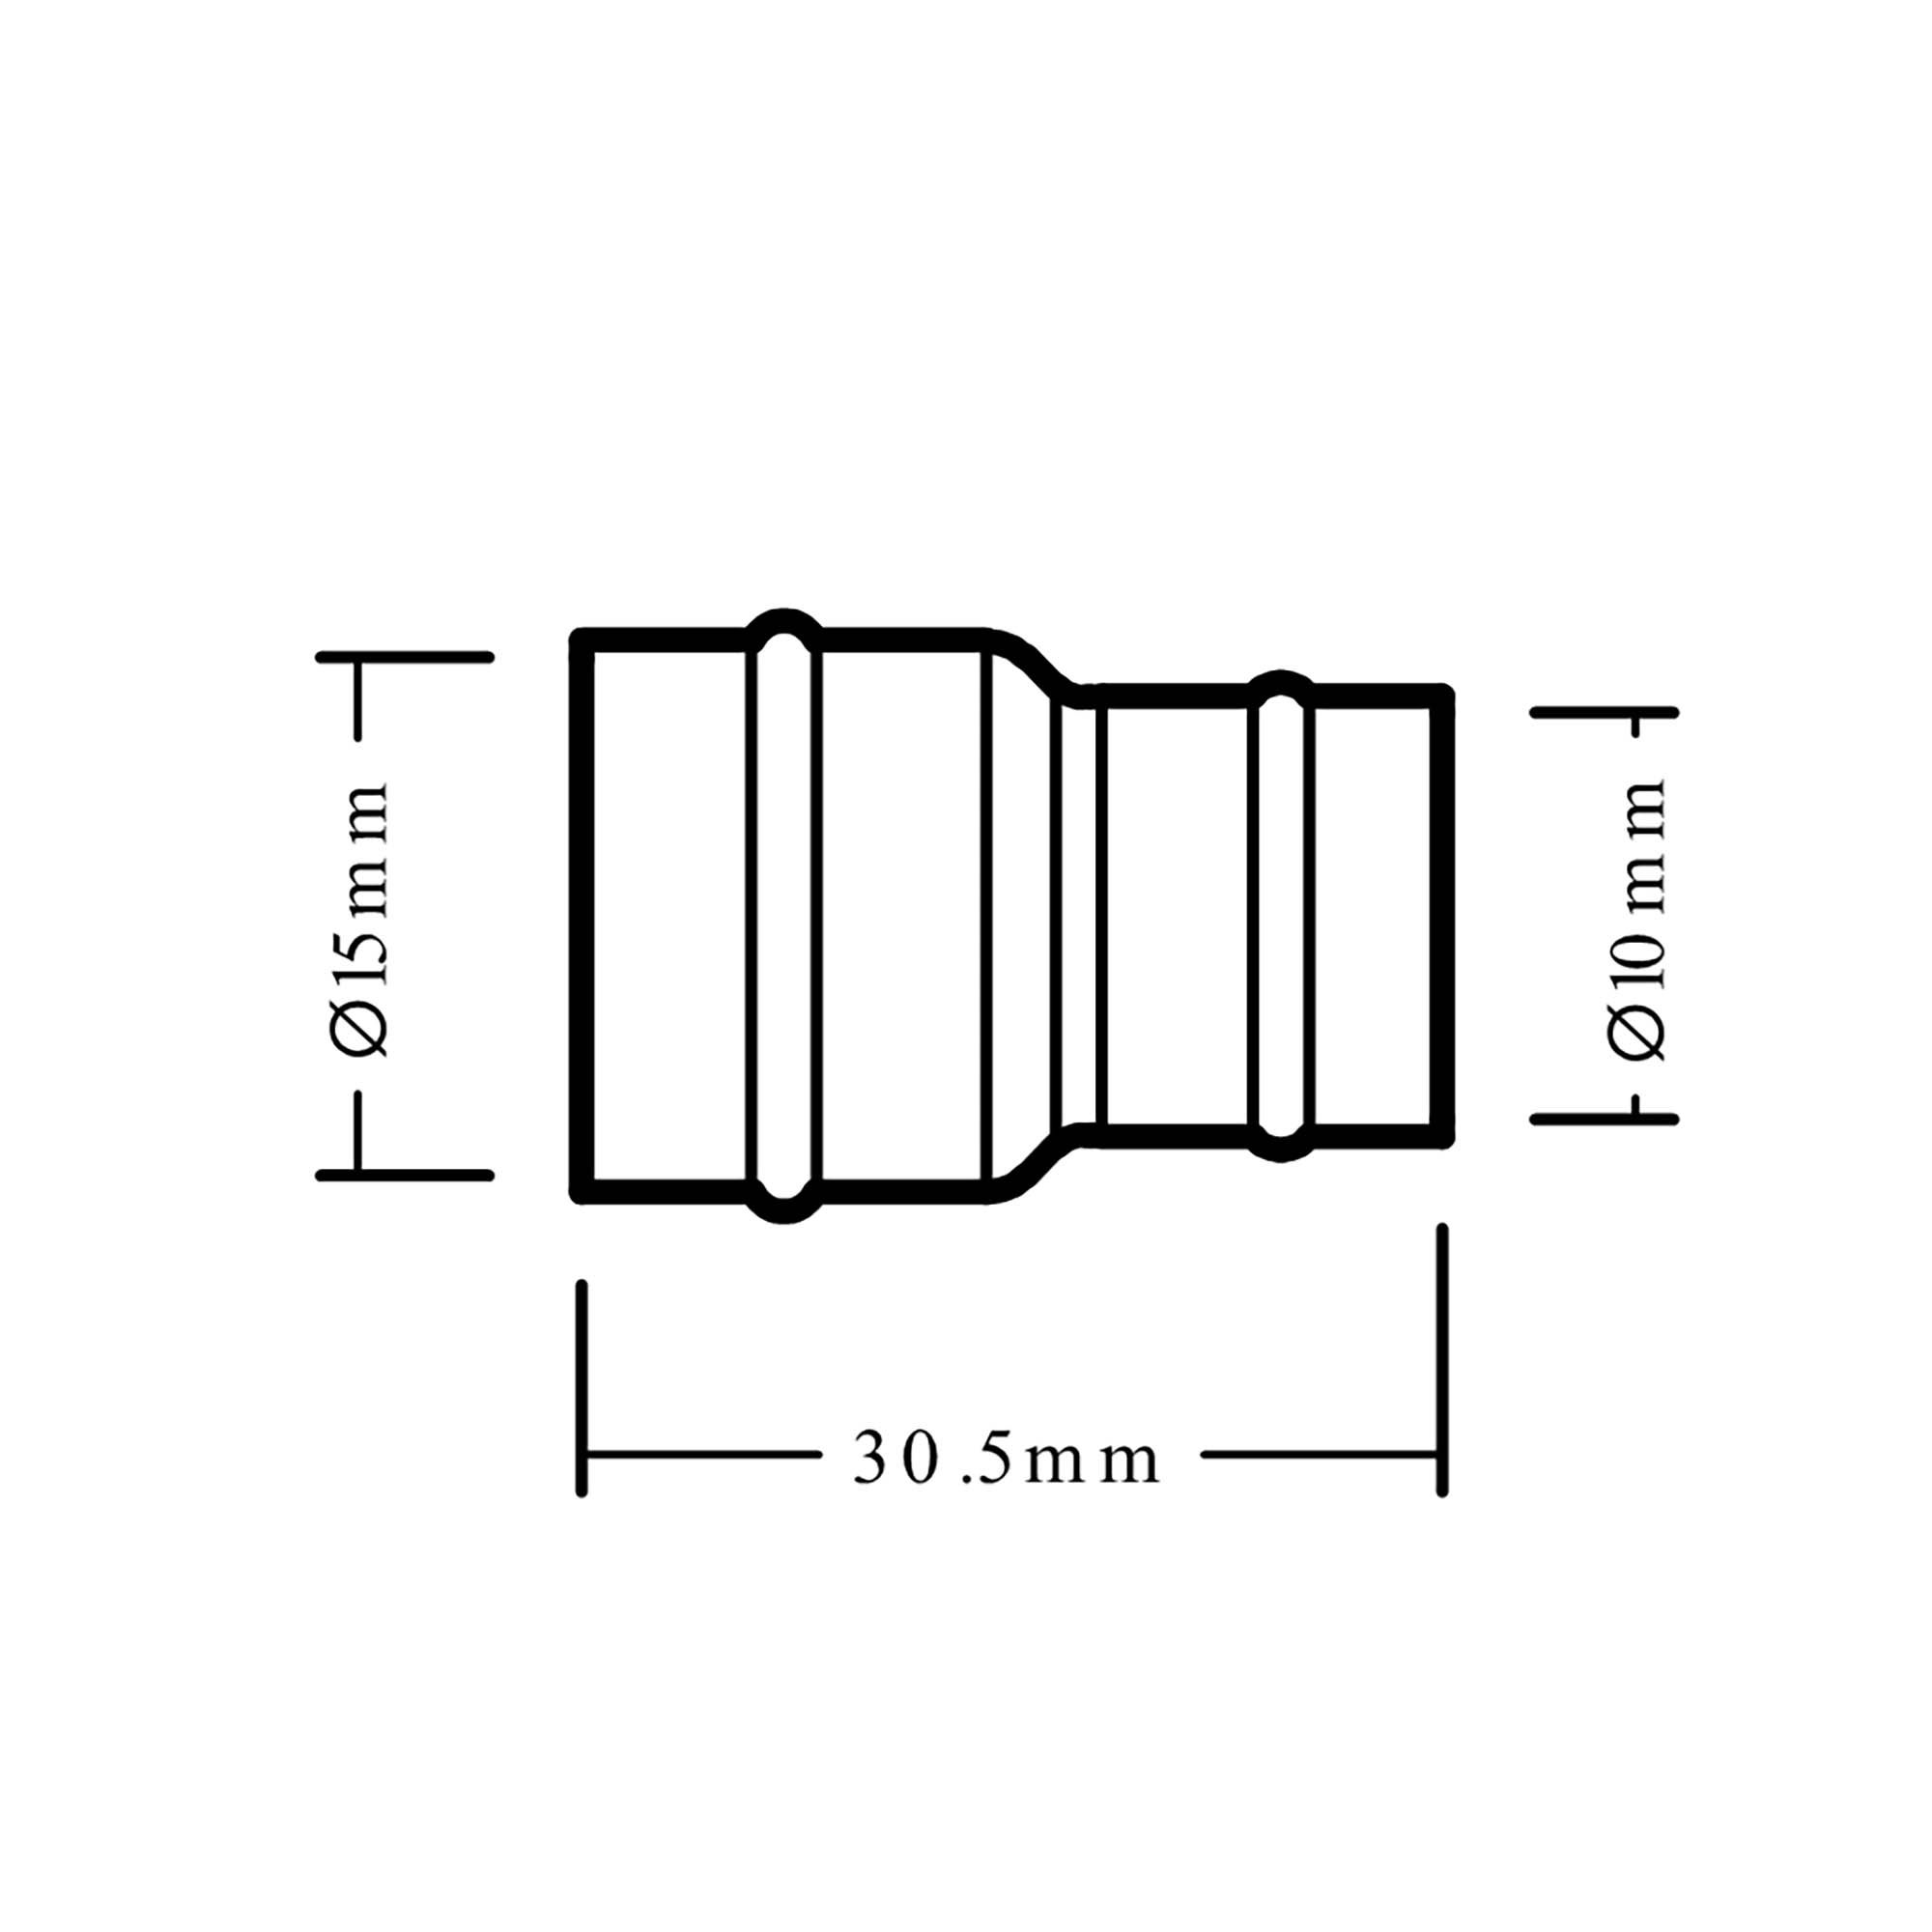 Plumbsure Solder ring Reducing Coupler (Dia)15mm (Dia)10mm 15mm